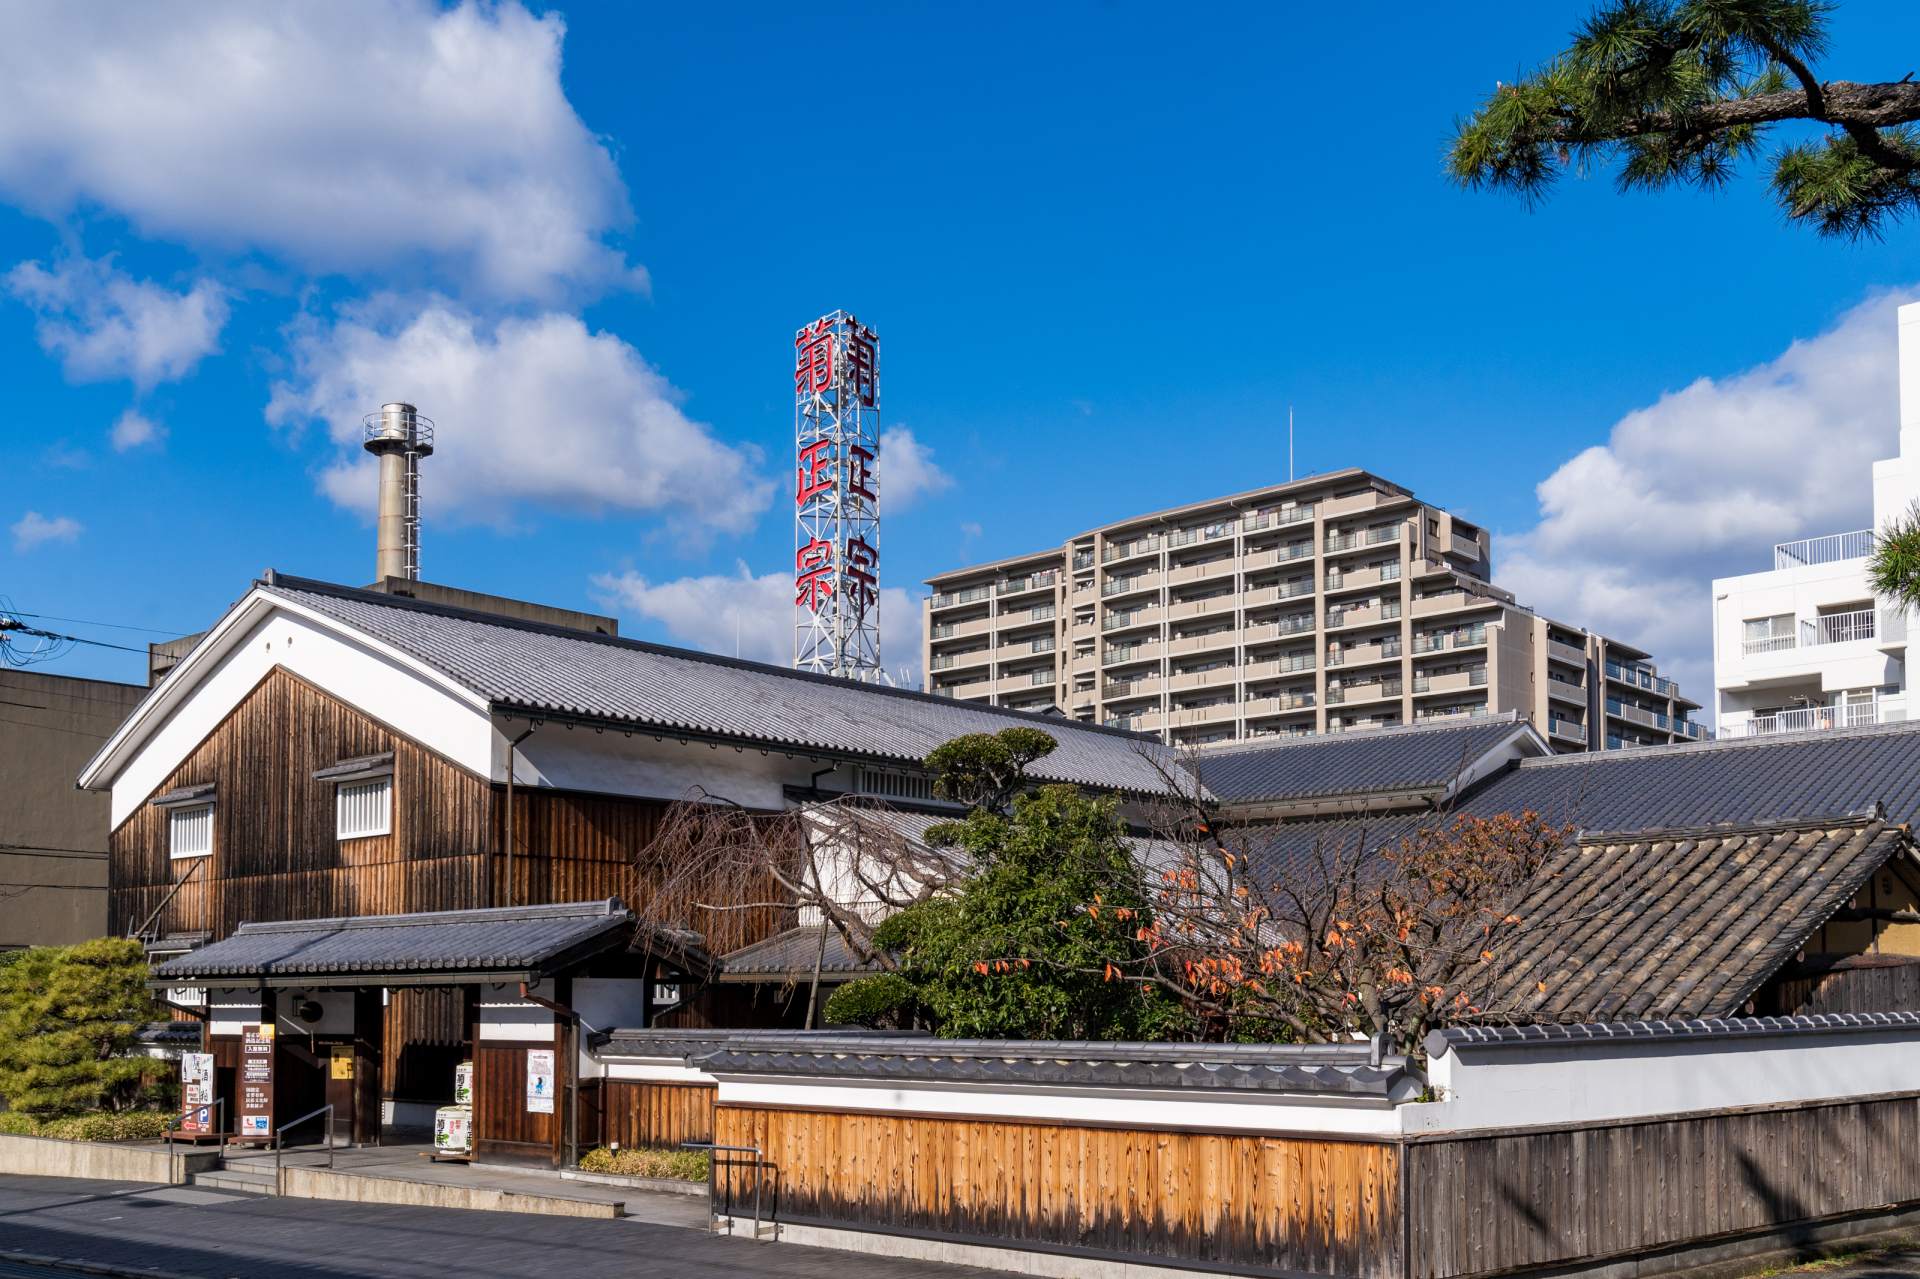 L'architecture de la brasserie de saké qui reste dans le paysage moderne raconte l'histoire de la brasserie de saké.